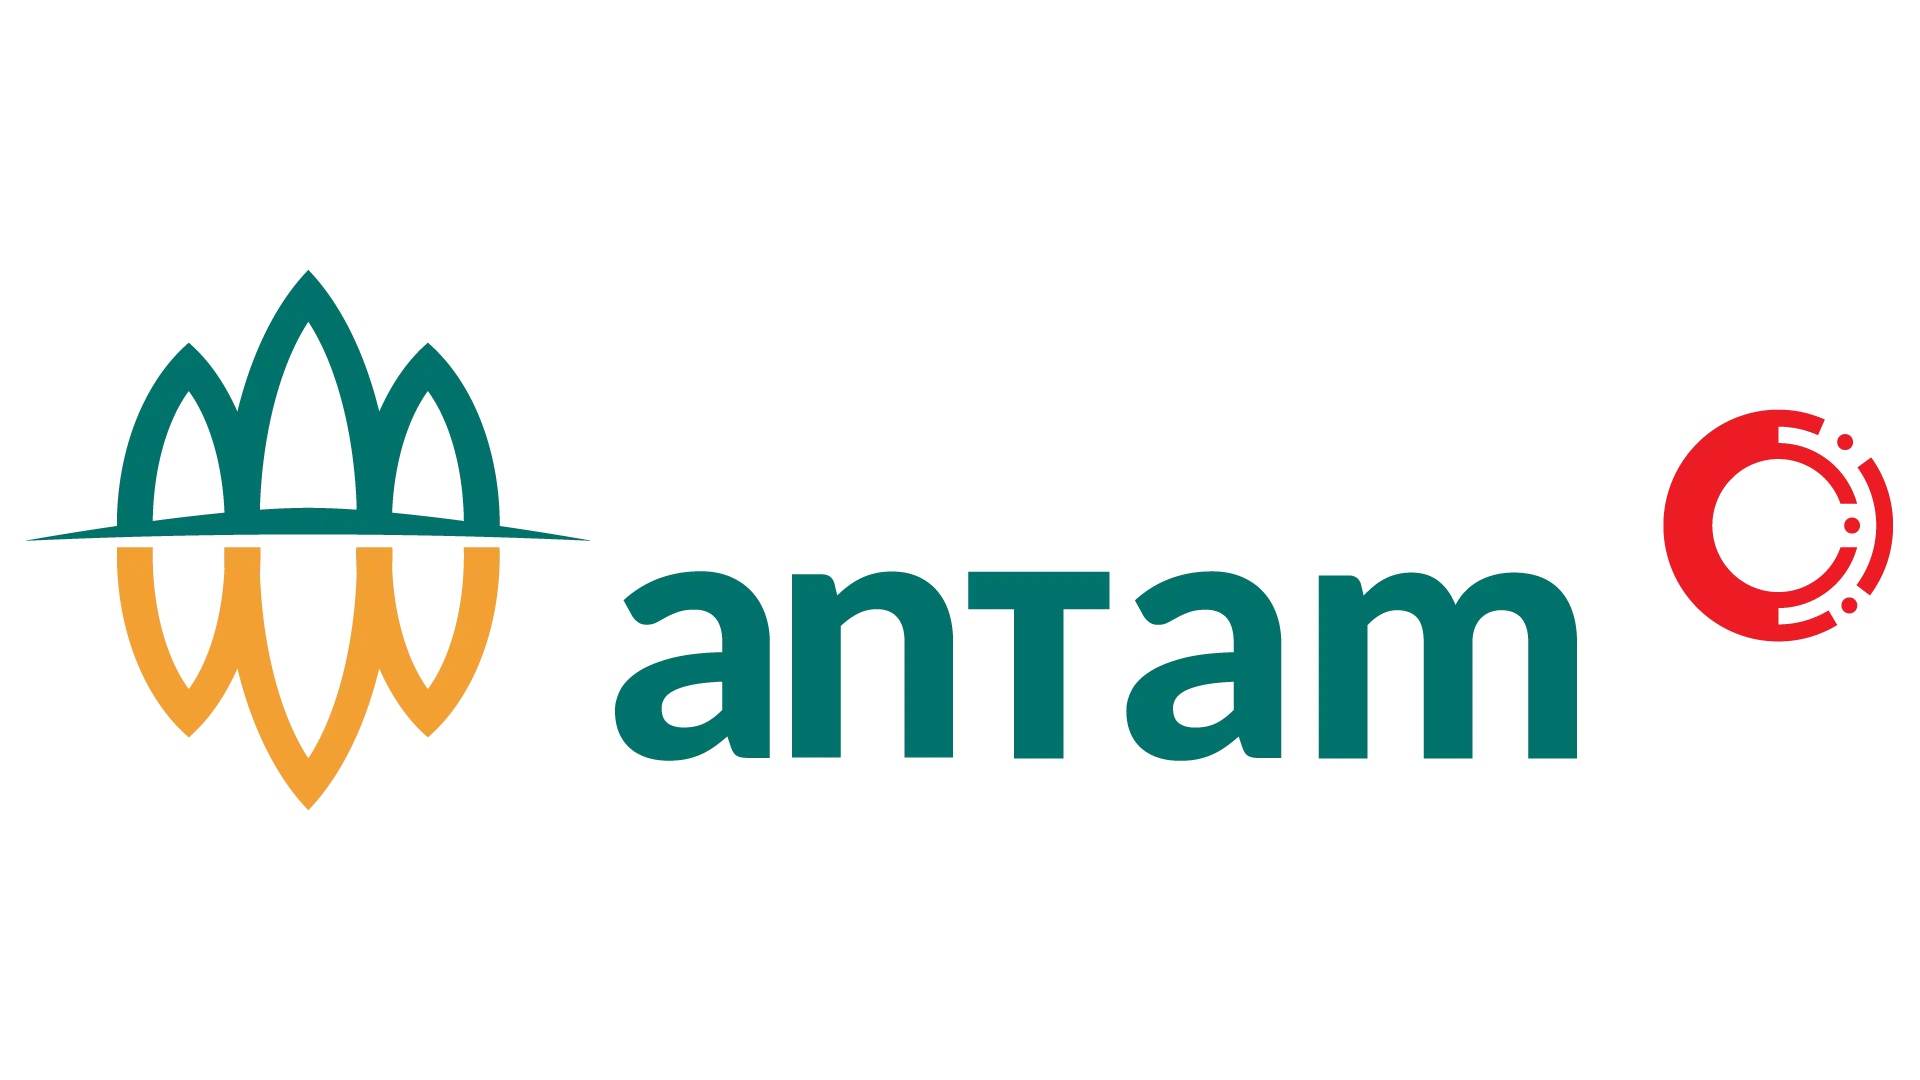 WhatsApp untuk industri pertambangan yang dimiliki oleh perusahaan Antam